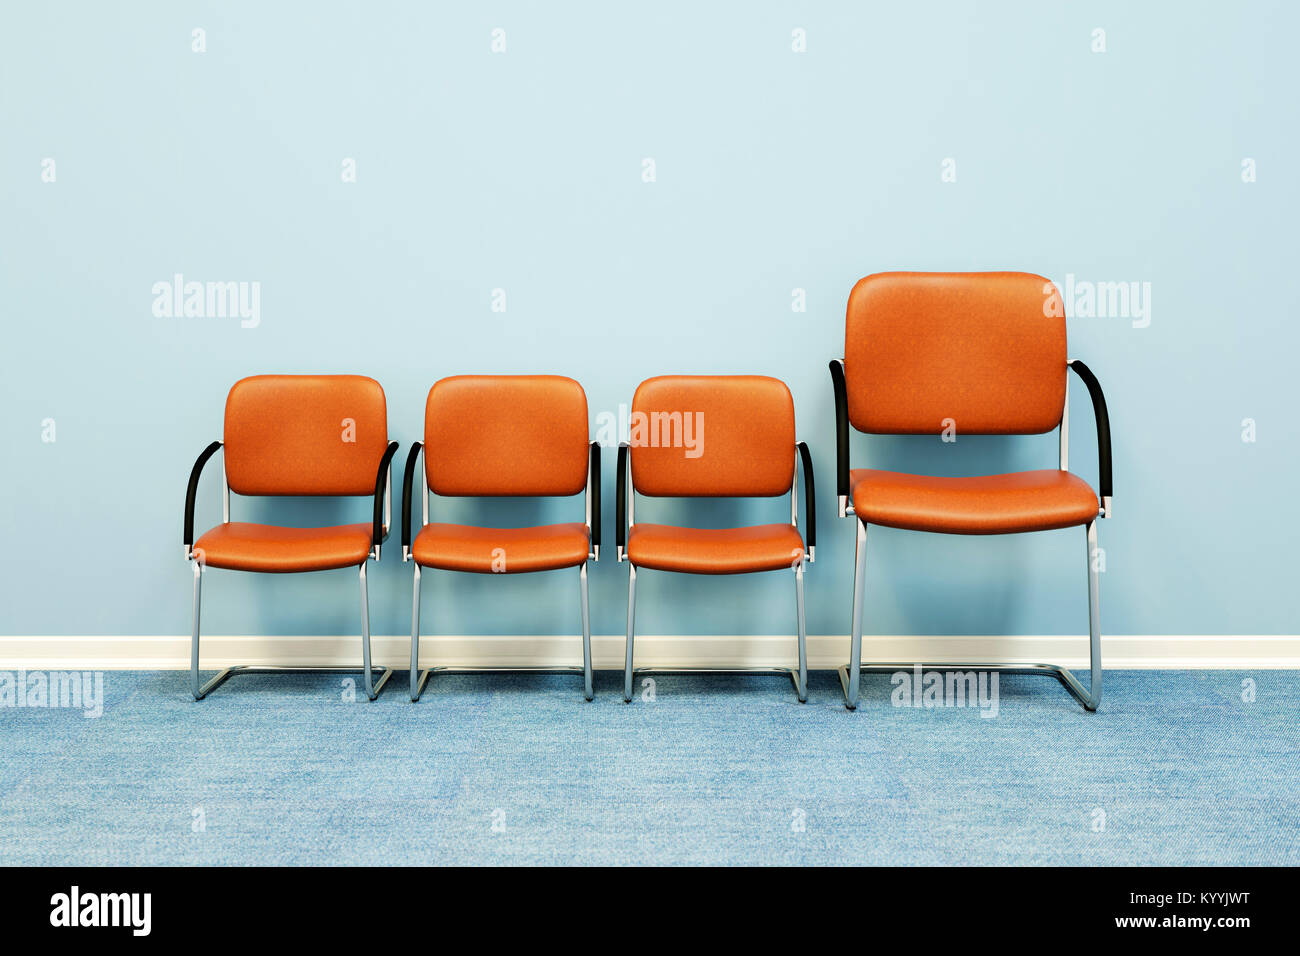 Eine große und drei kleine Stühle in einer Reihe gegen eine Wand in einem leeren Raum - Konzept Bild Stockfoto